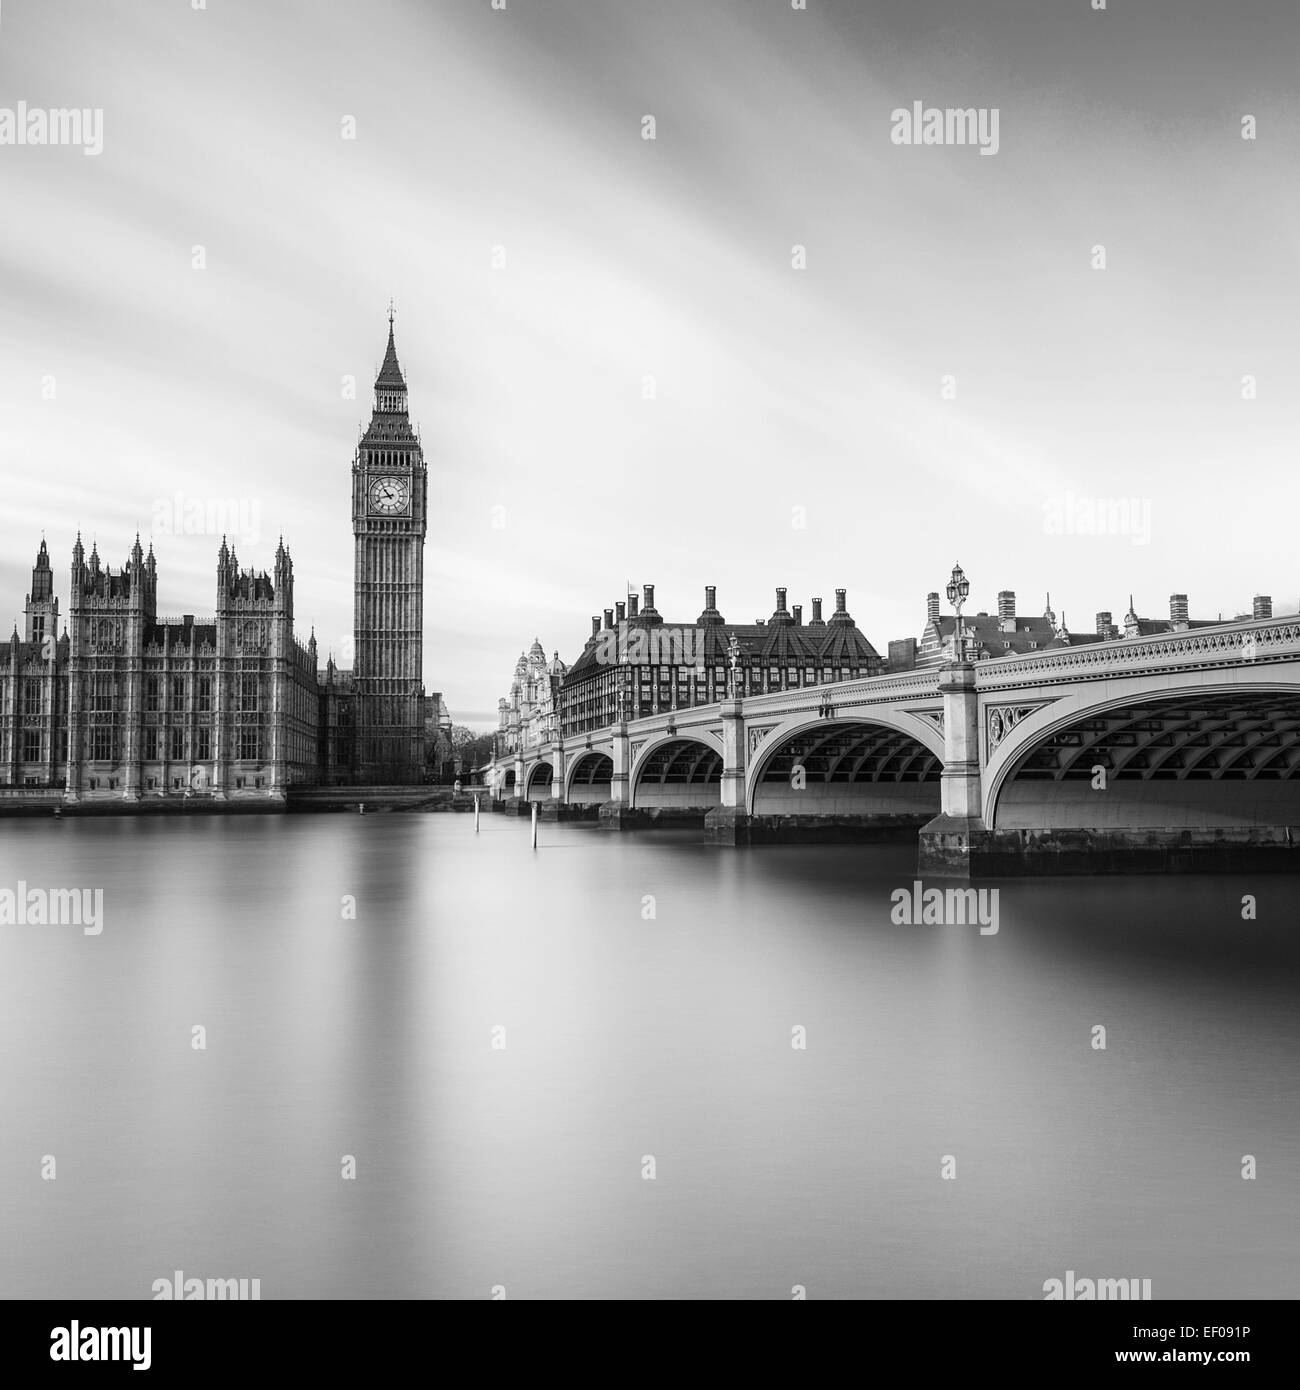 Londres, une vue emblématique de Big Ben et du Parlement de l'autre côté de la Tamise. Banque D'Images